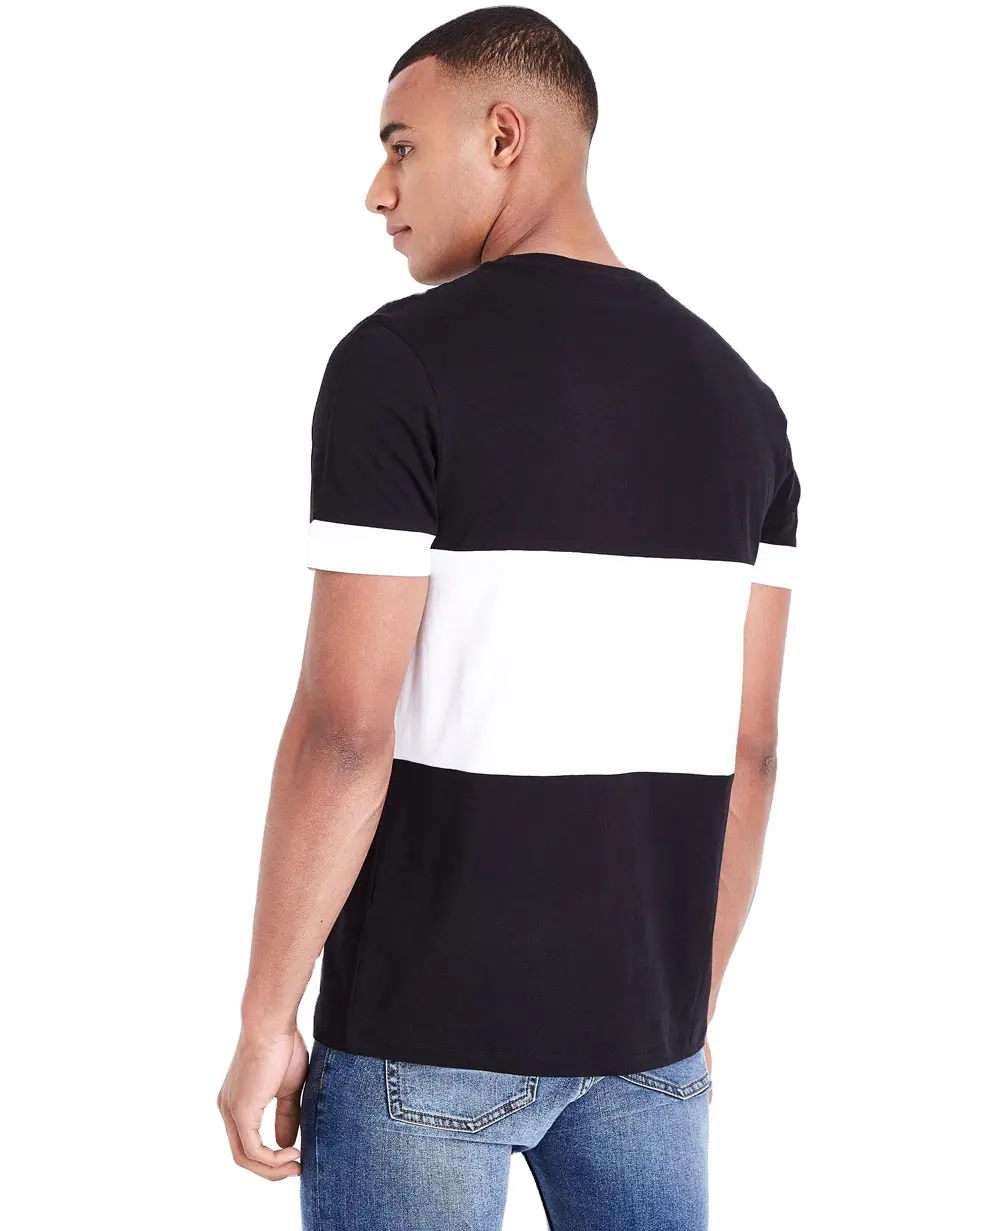 Camiseta negra personalizada para hombre, Camisa larga 100% algodón promocional, barata, de alta calidad, venta al por mayor, nueva